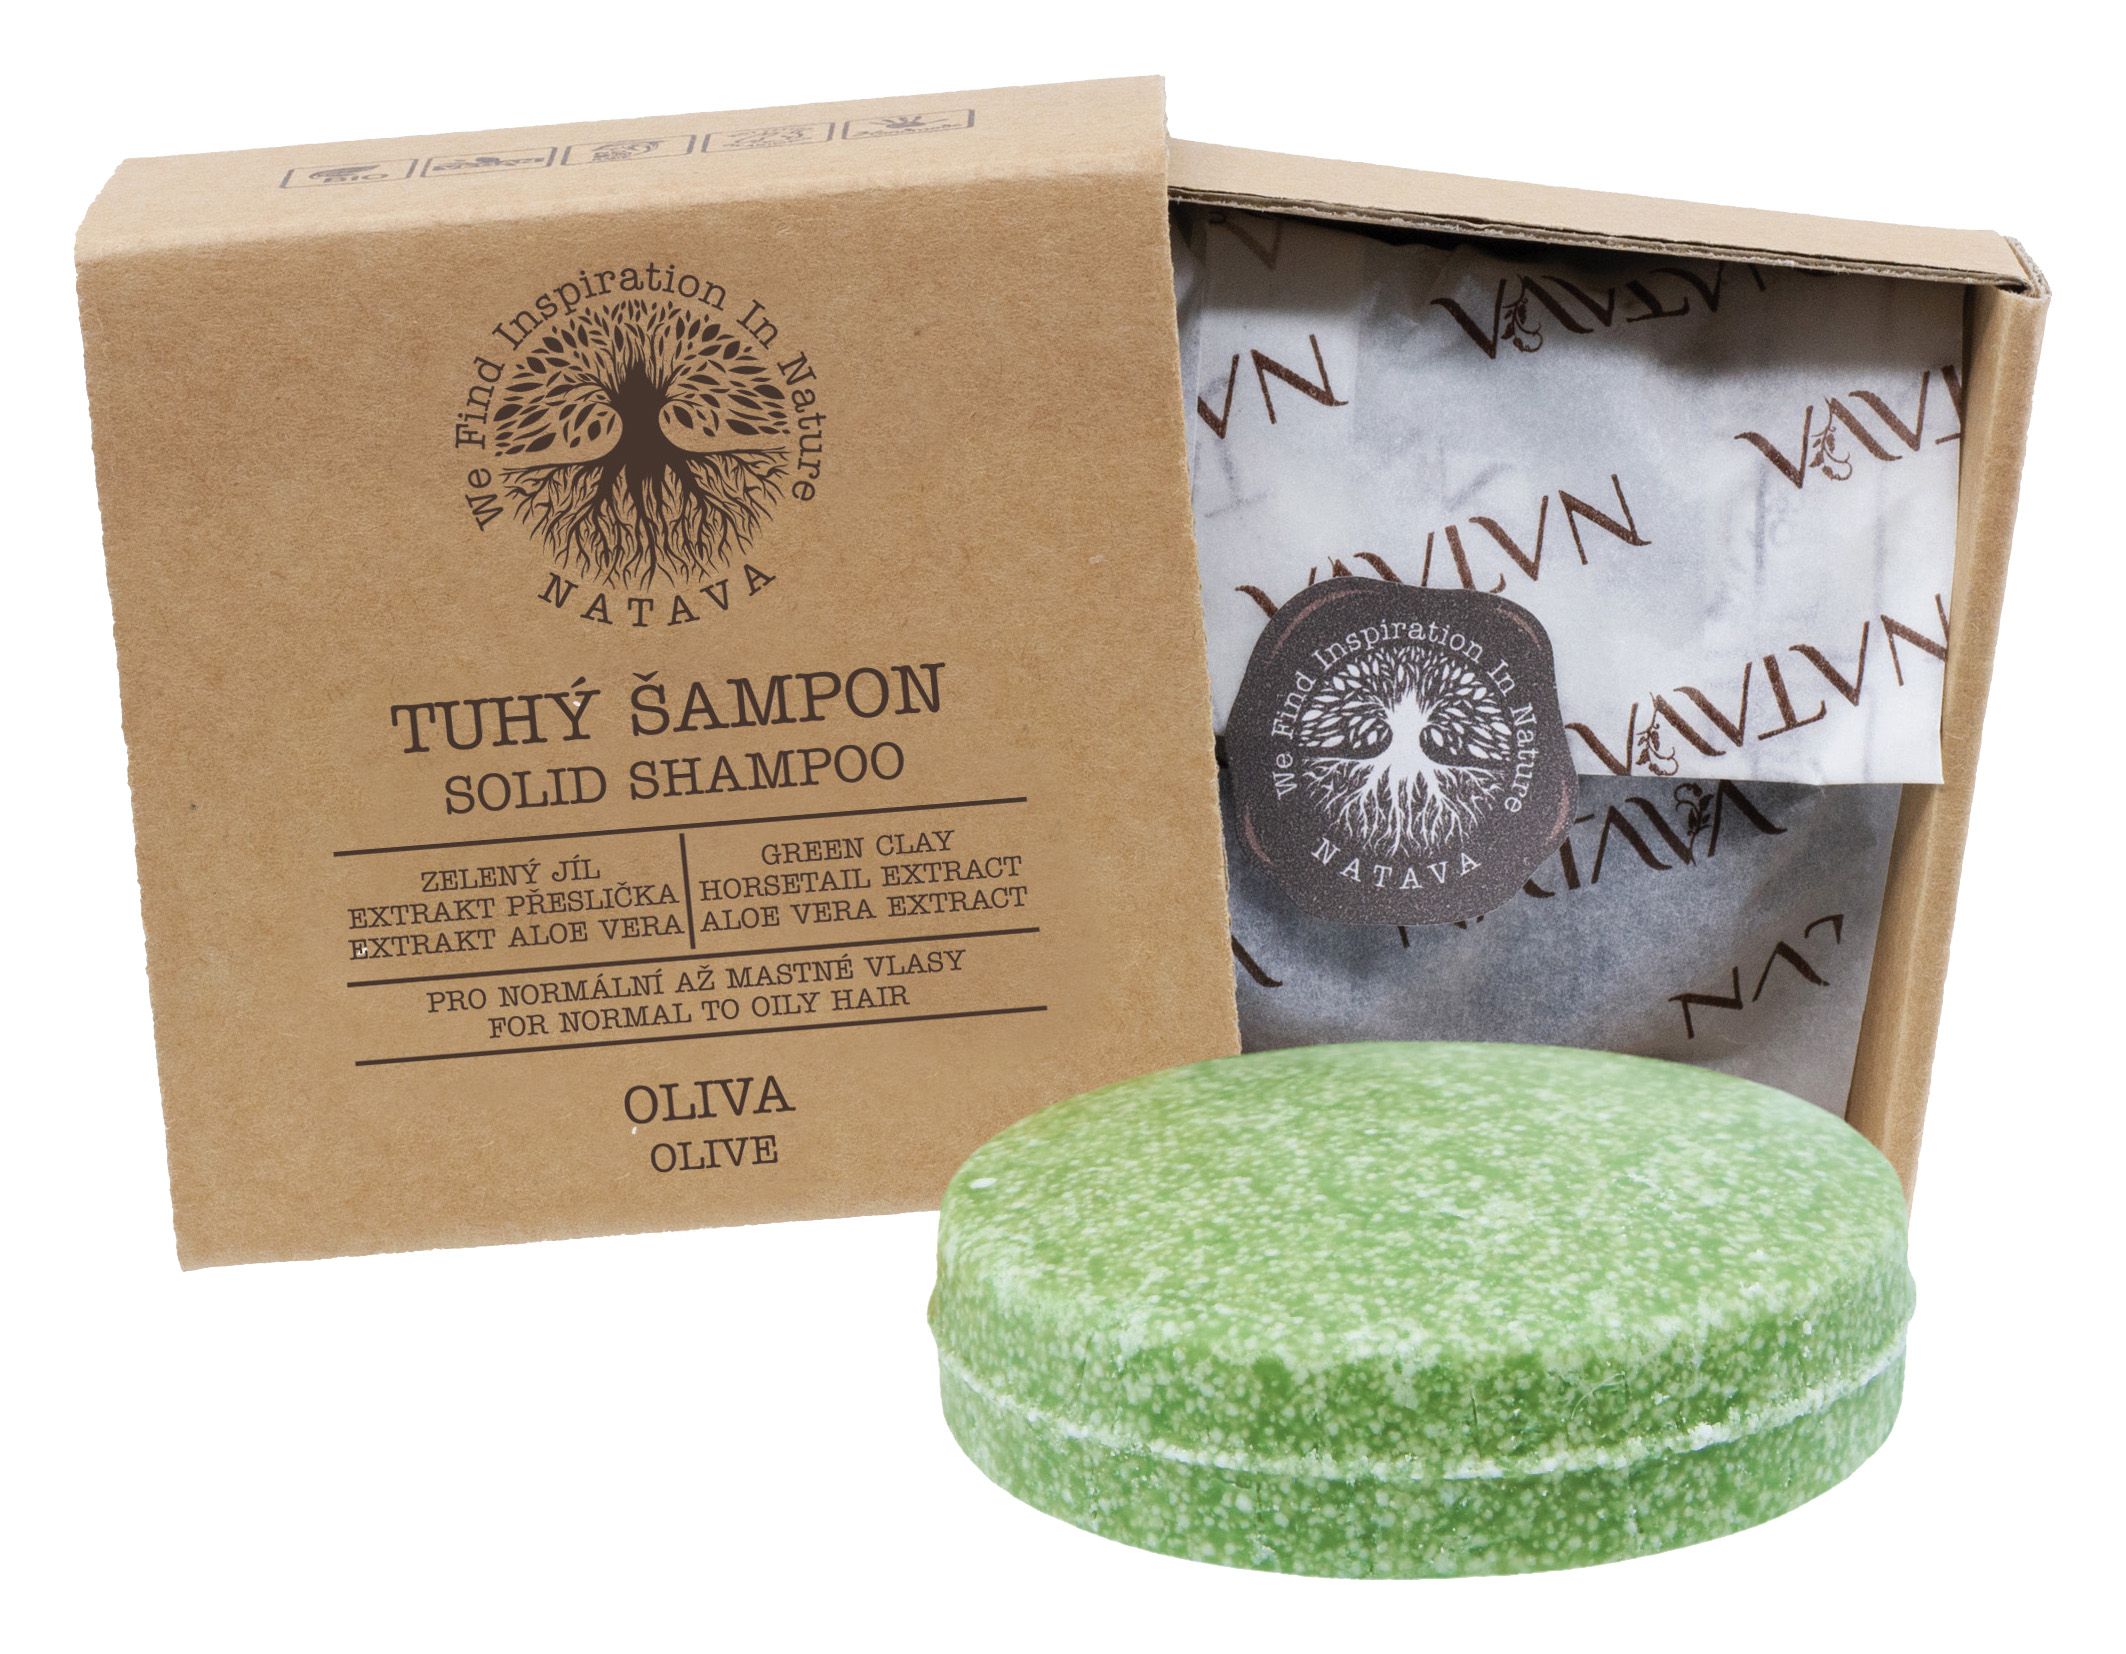 Tuhý šampon Oliva - normálně + rychle se mastící vlasy (zelený jíl, olivový olej, aloe)